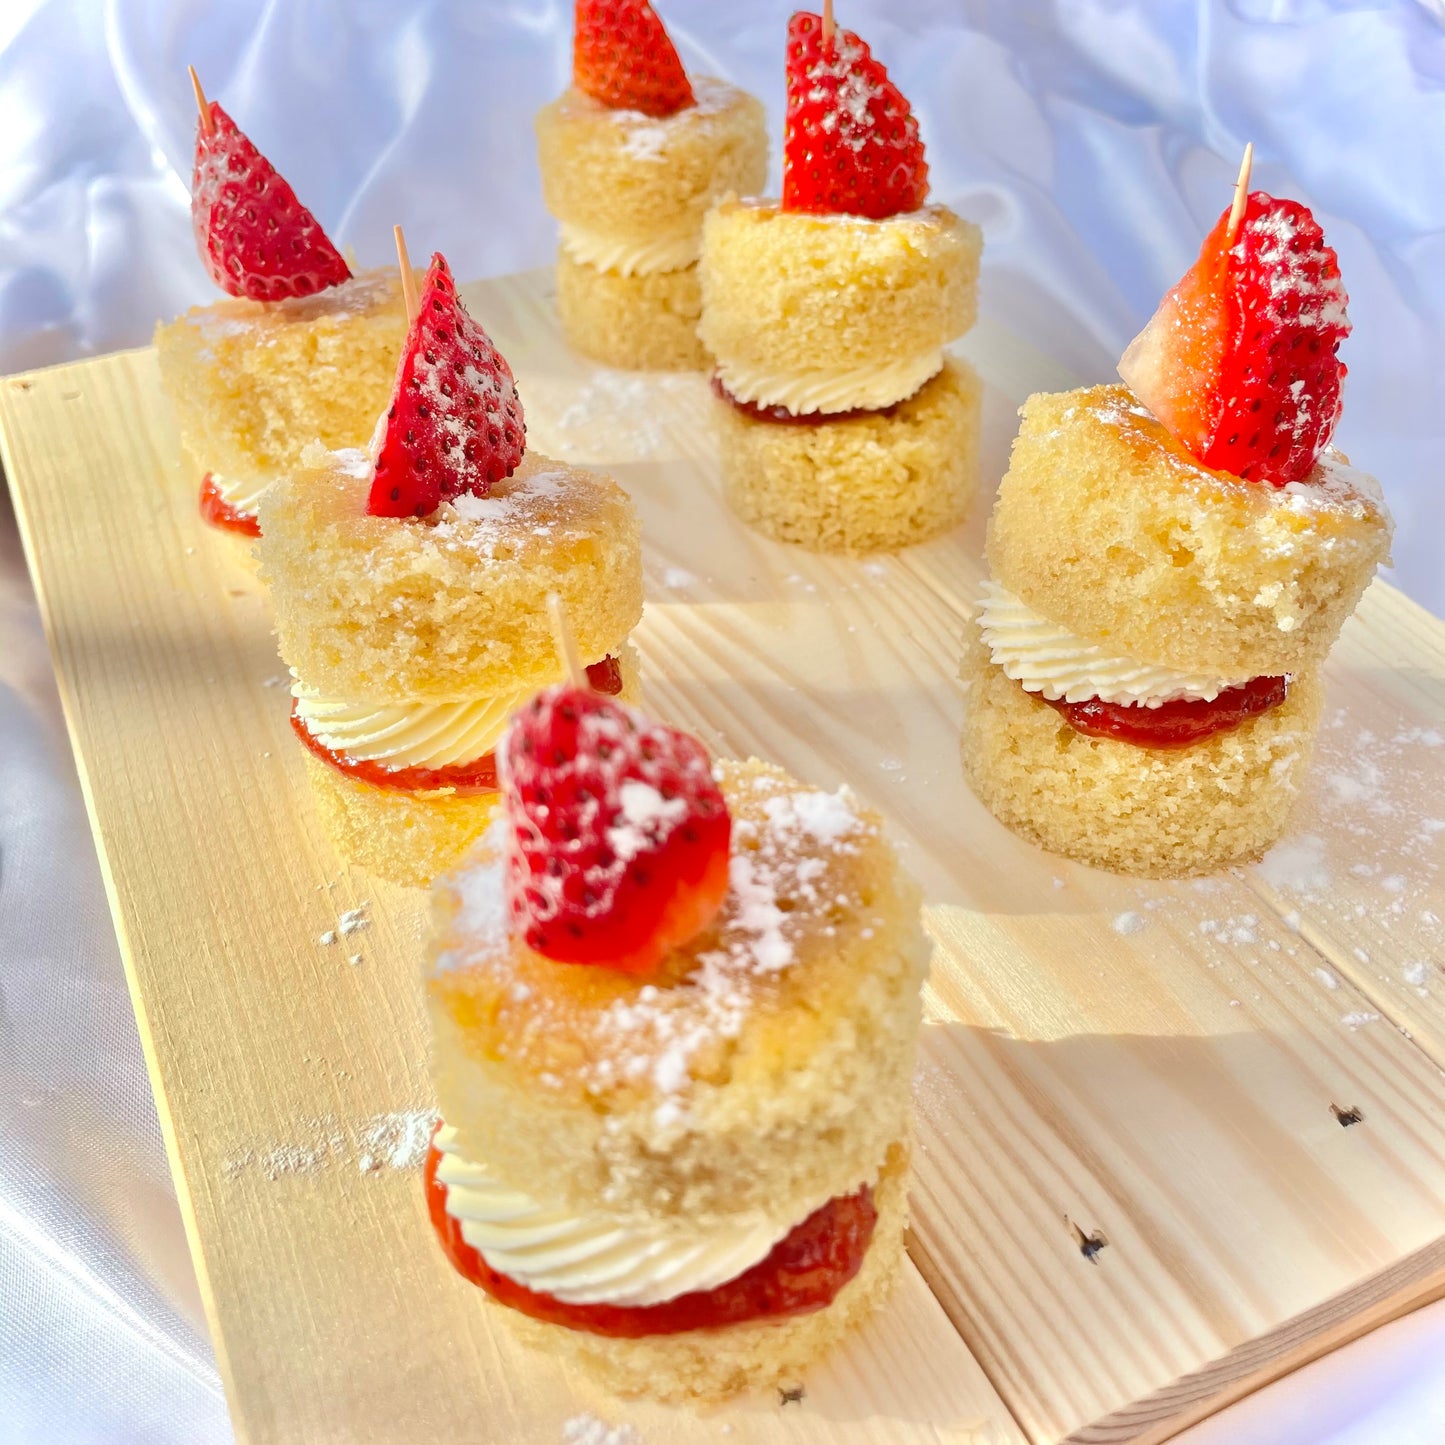 Mini Victoria sponge cakes with strawberry top